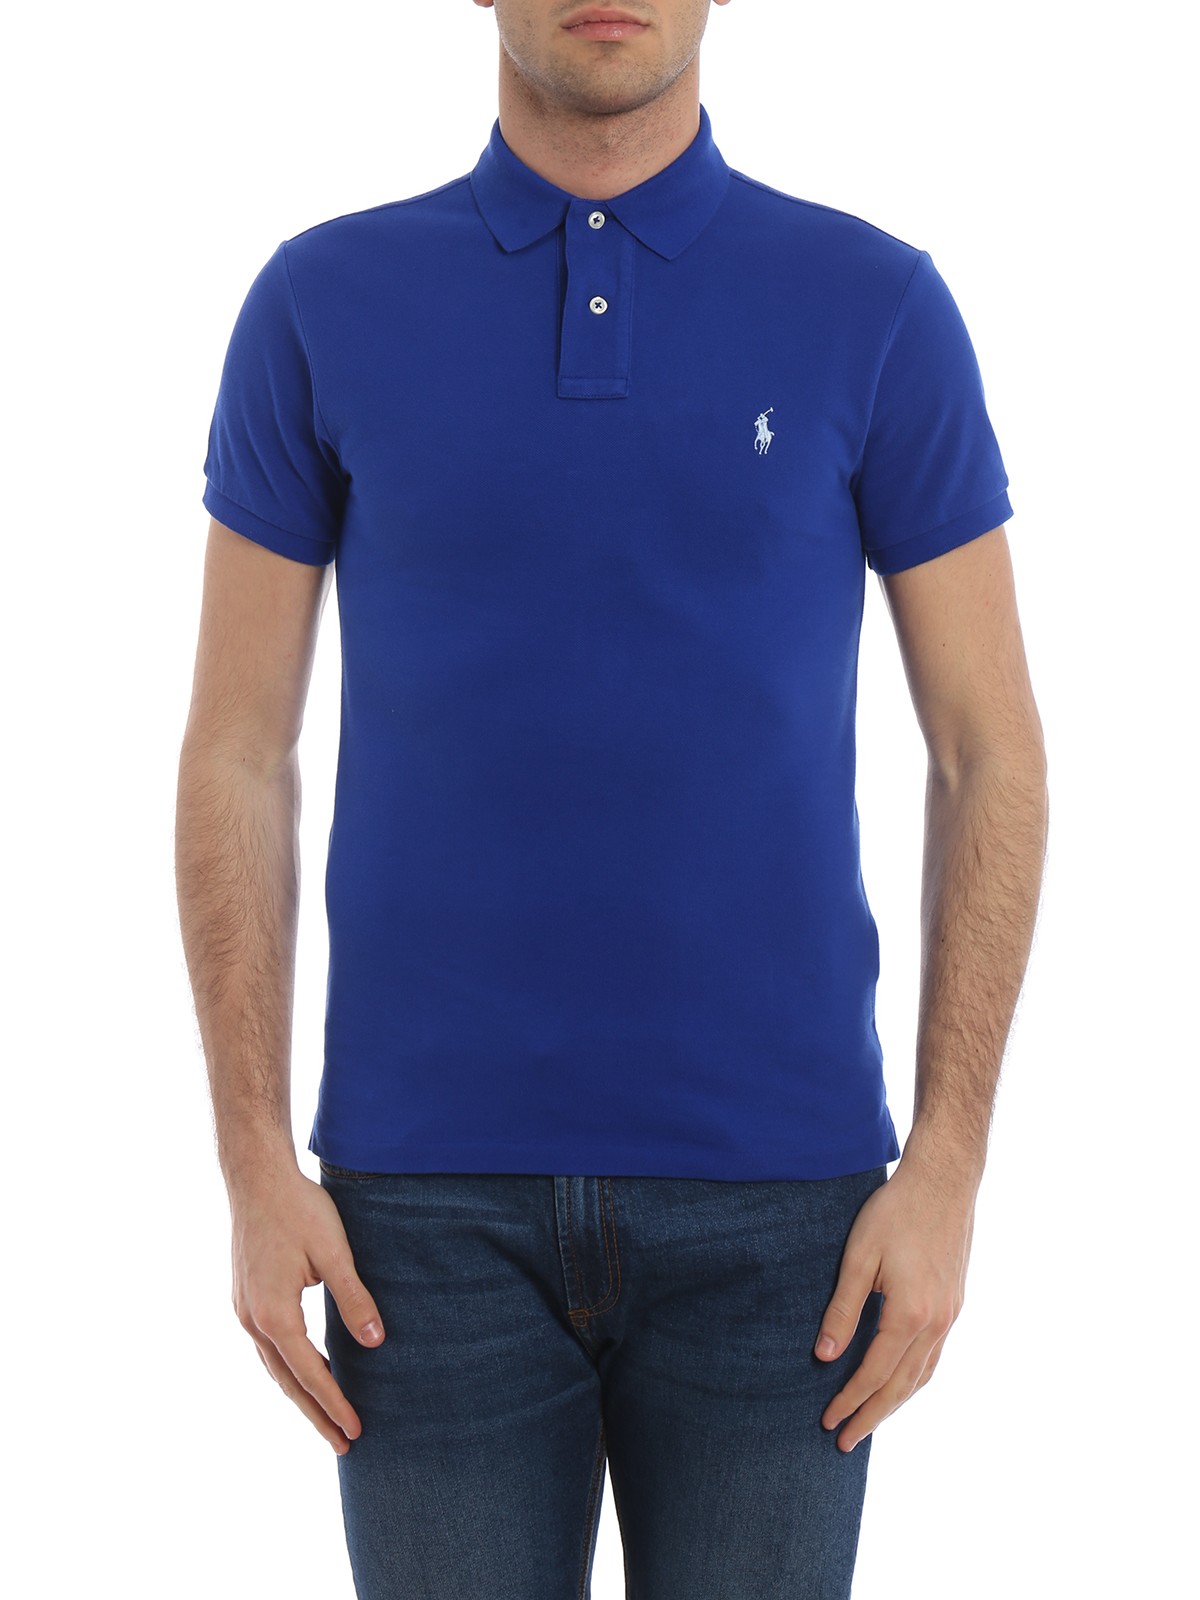 Polo Ralph Lauren - Heritage blue polo shirt in pique cotton - polo ...